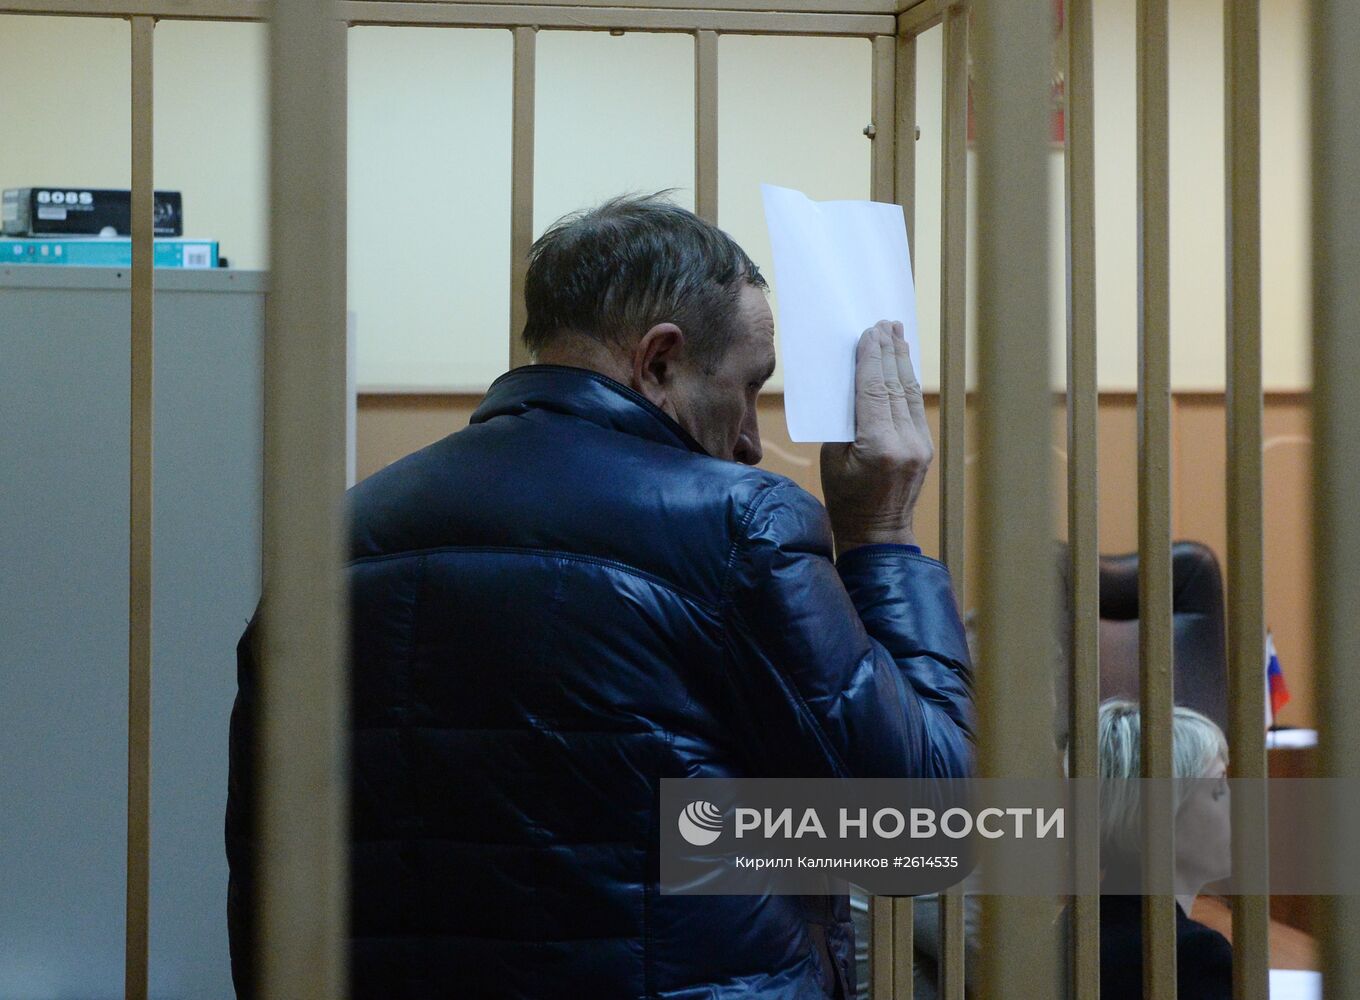 Рассмотрение вопроса об аресте бывшего министра сельского хозяйства Сахалина Николая Борисова по делу о взяточничестве